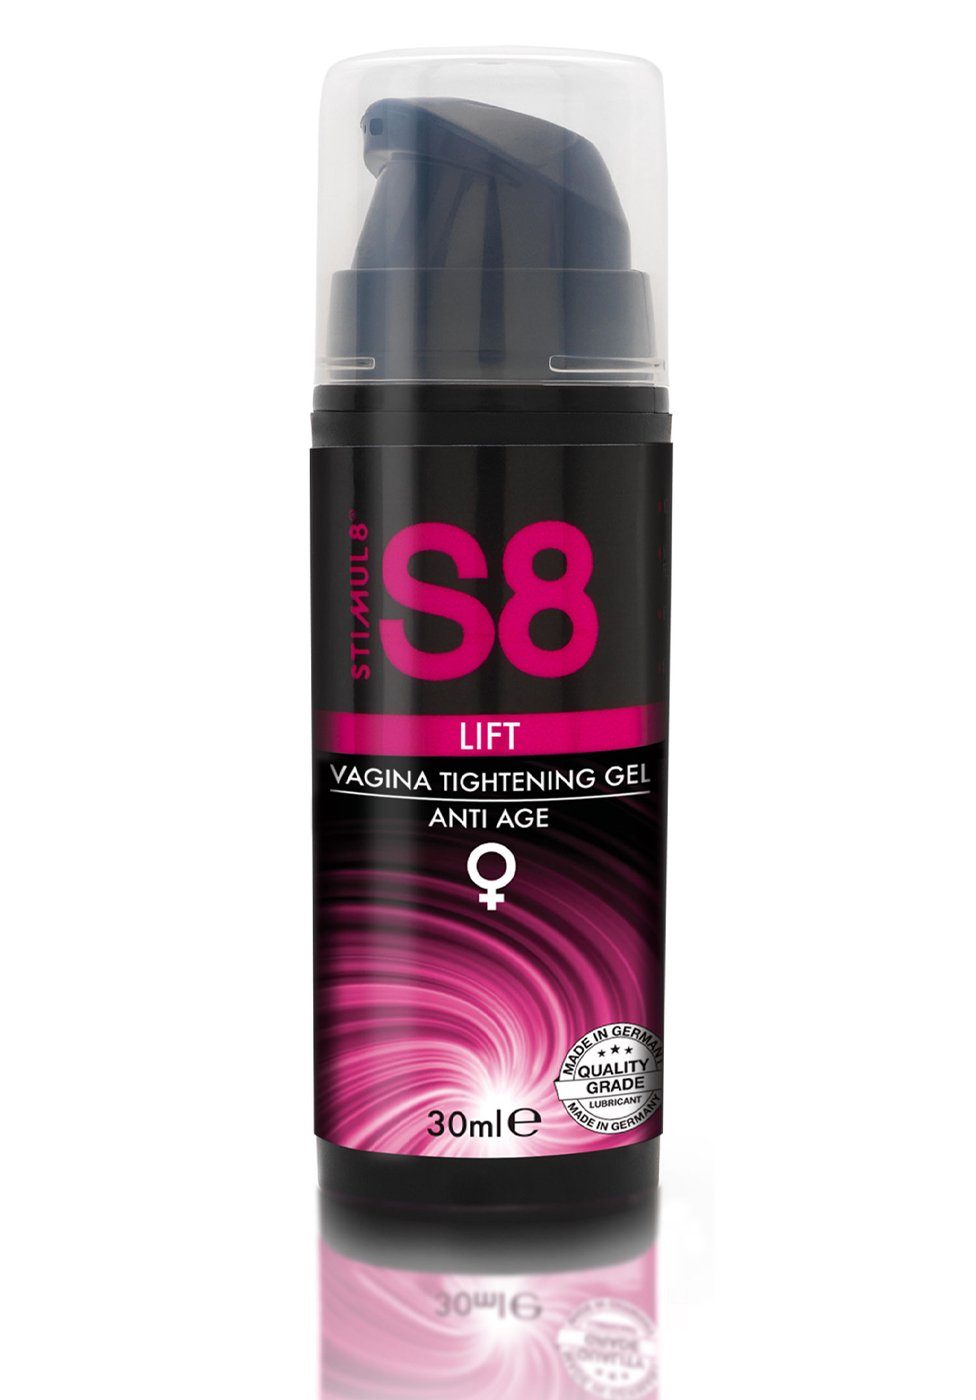 - ml 30 Stimulationsgel Vagina Lift S8 Stimul8 Tightening Gel